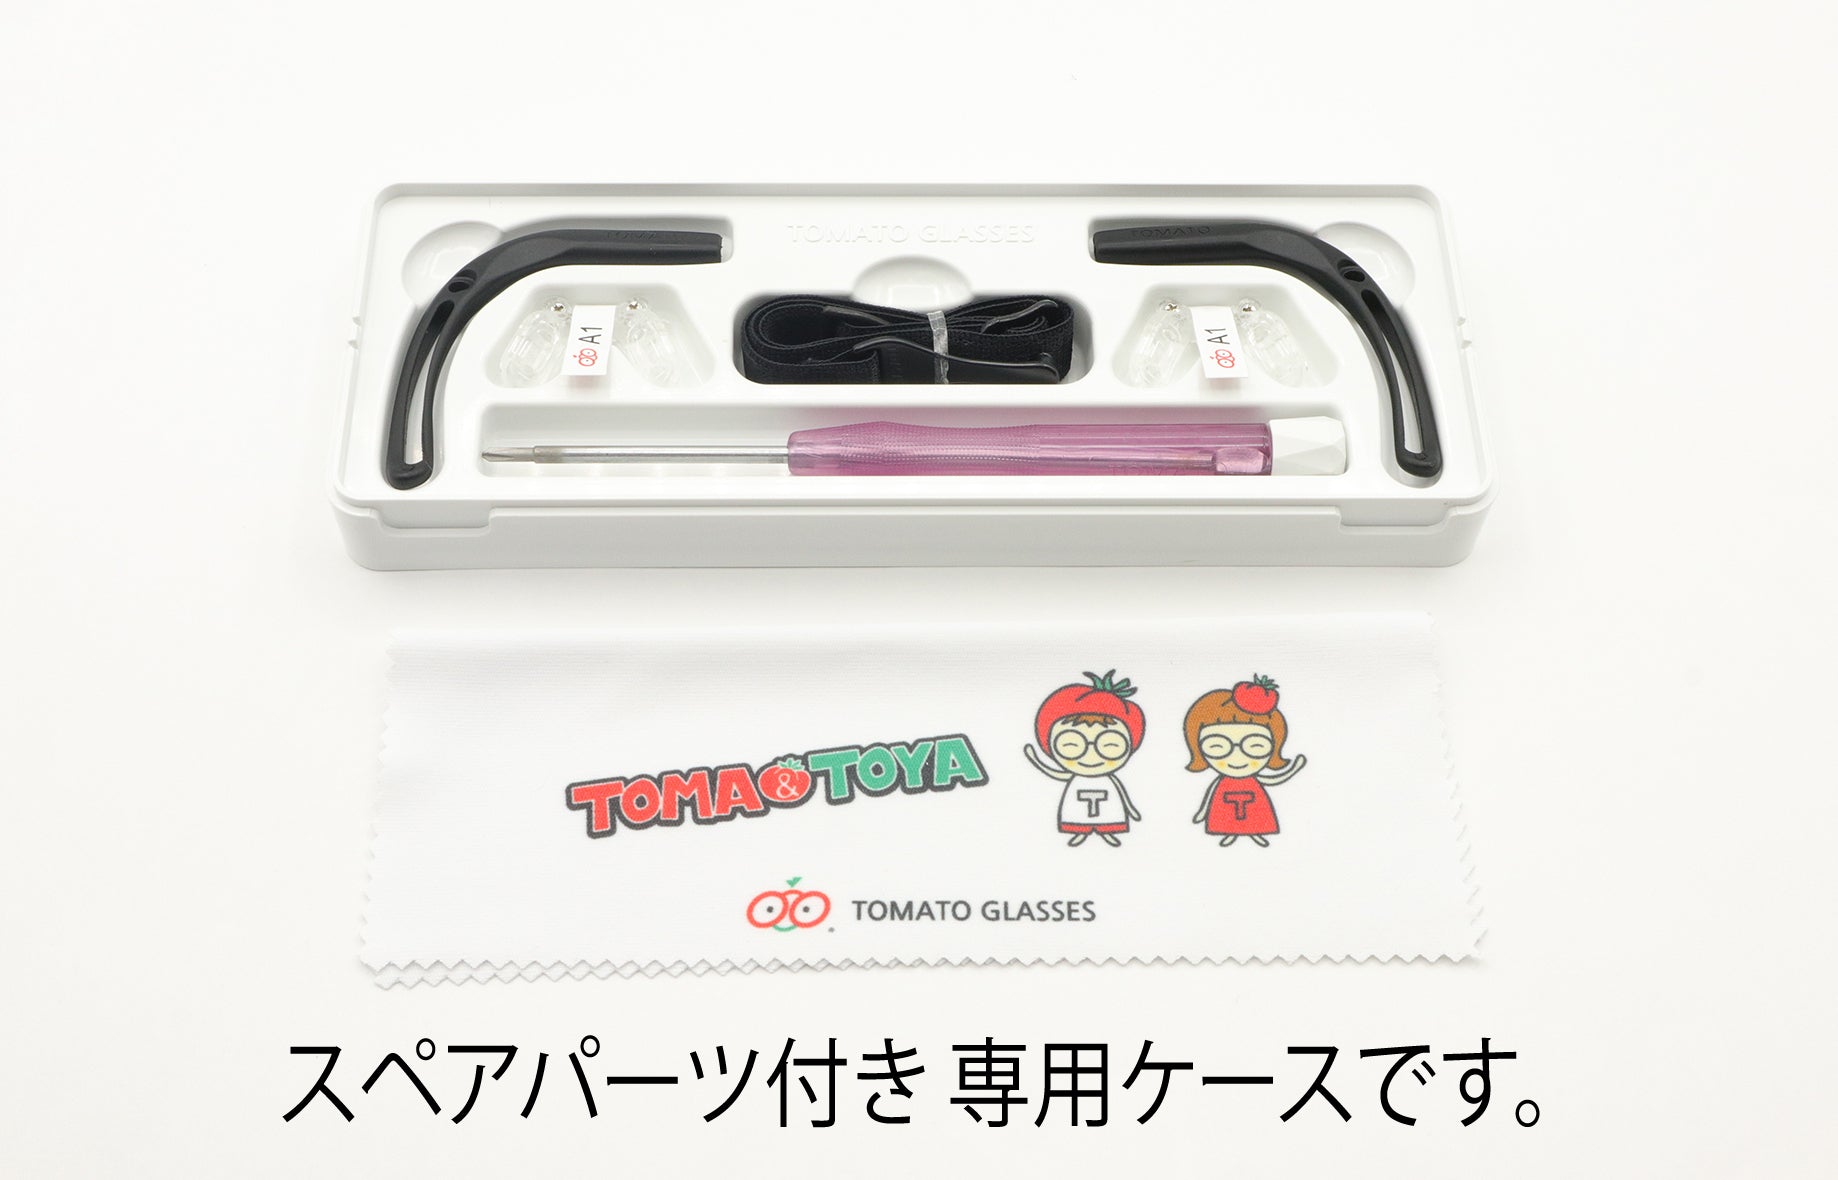 TOMATO GLASSES(トマトグラッシーズ) TKAC503ブラウンデミ(43サイズ)